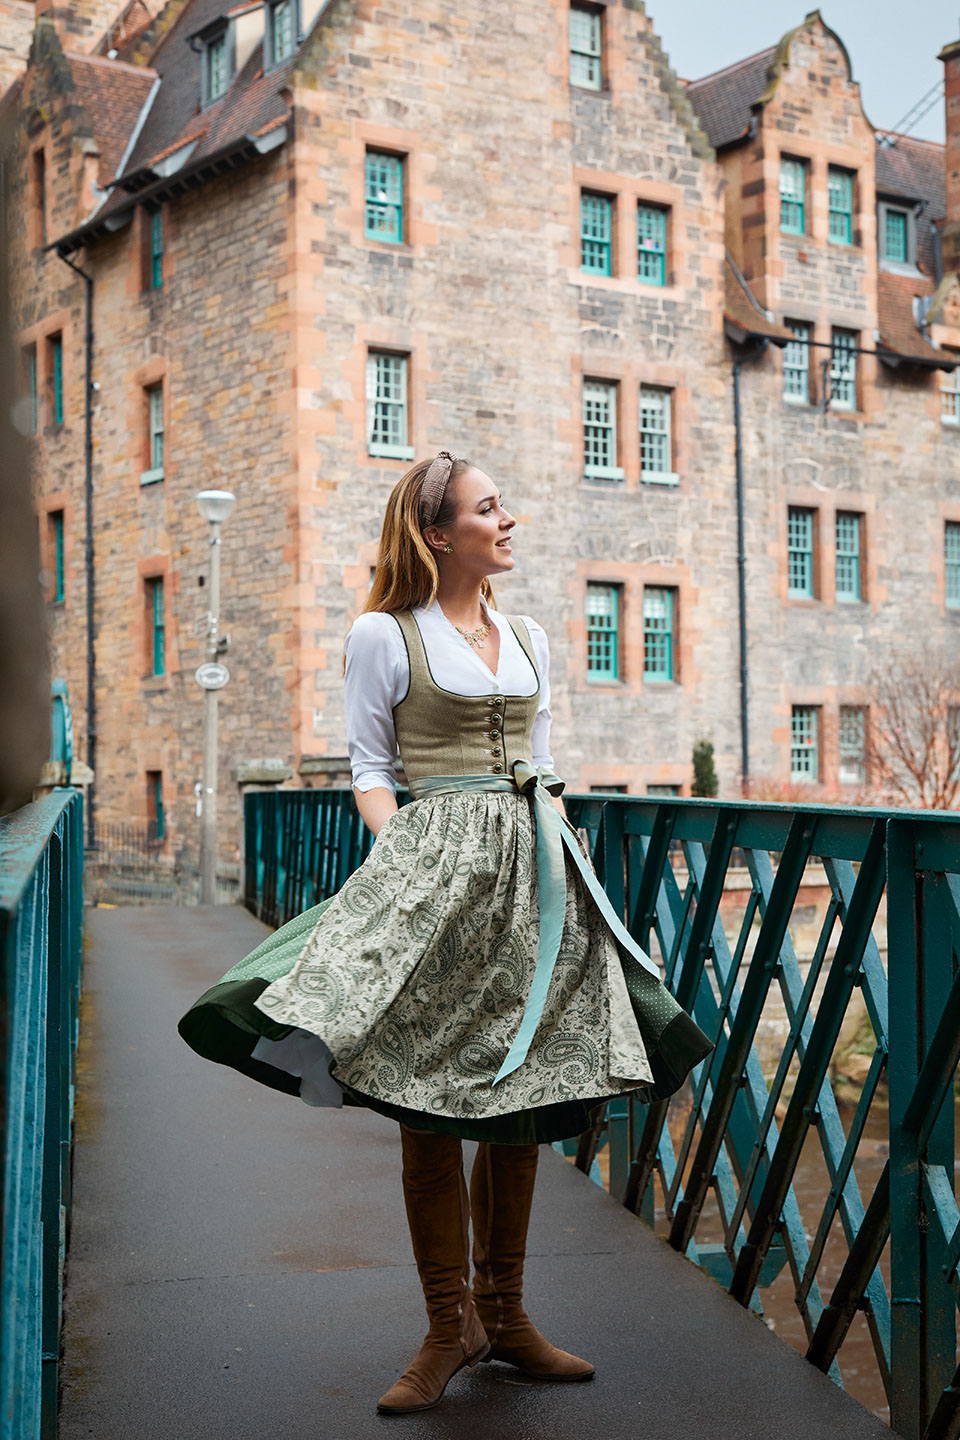 Mode von Susanne Spatt fotgrafiert in Edinburg